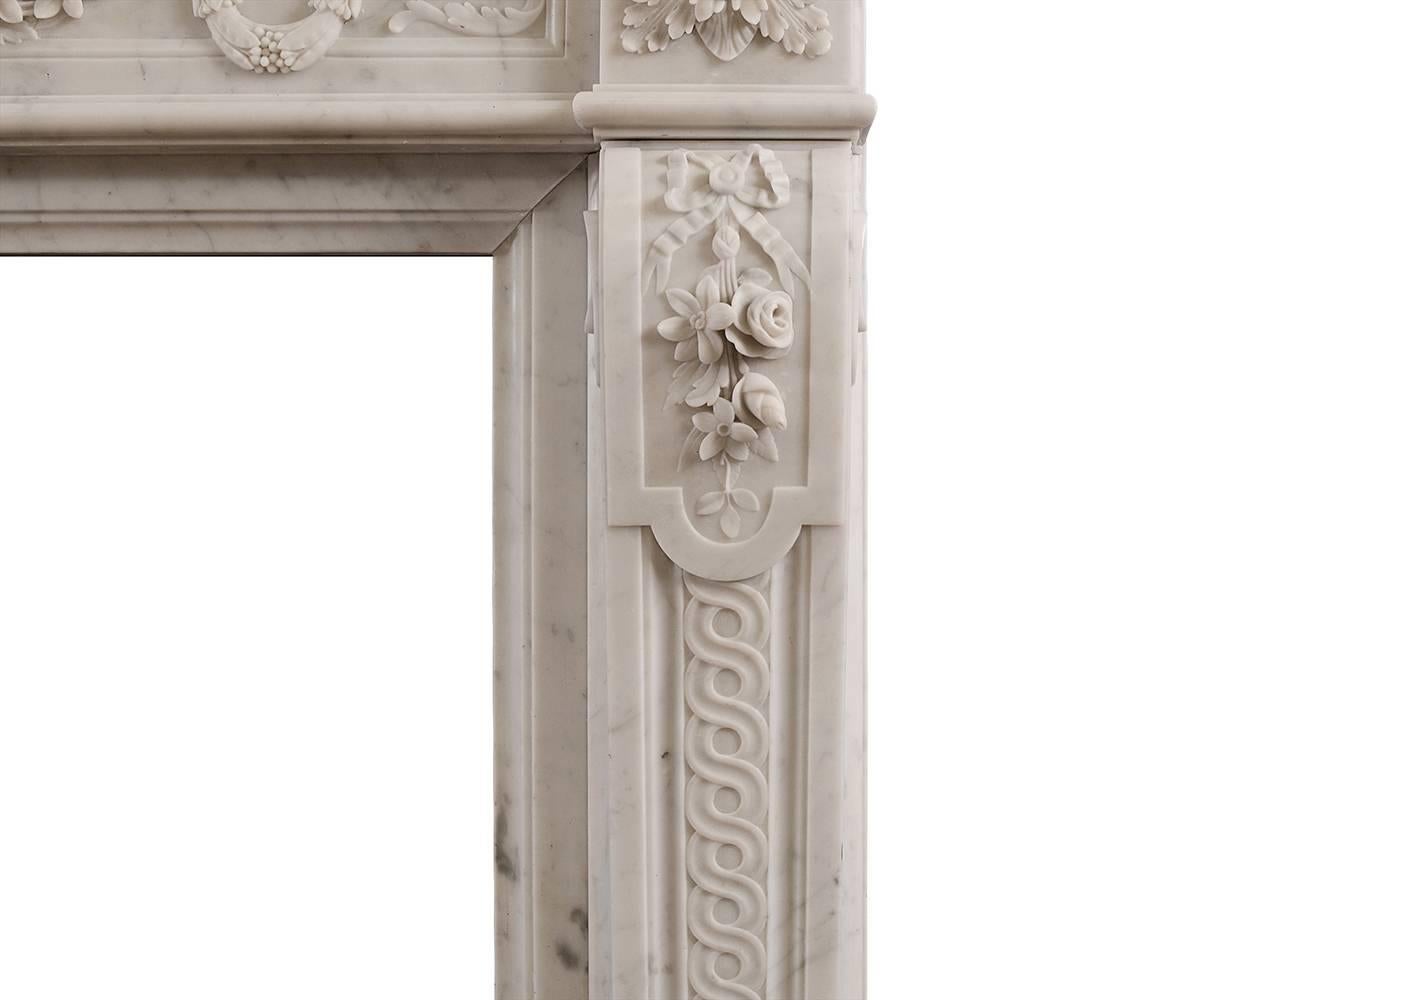 Ein französischer Kamin aus Carrara-Marmor im Louis-XVI-Stil aus dem 19. Jahrhundert. Der getäfelte Fries mit Fackel und Köcher in der Mitte, geschnitzten Kränzen und drapierten Blumen. Die verschnörkelten Pfosten mit gebundenen Bändern und